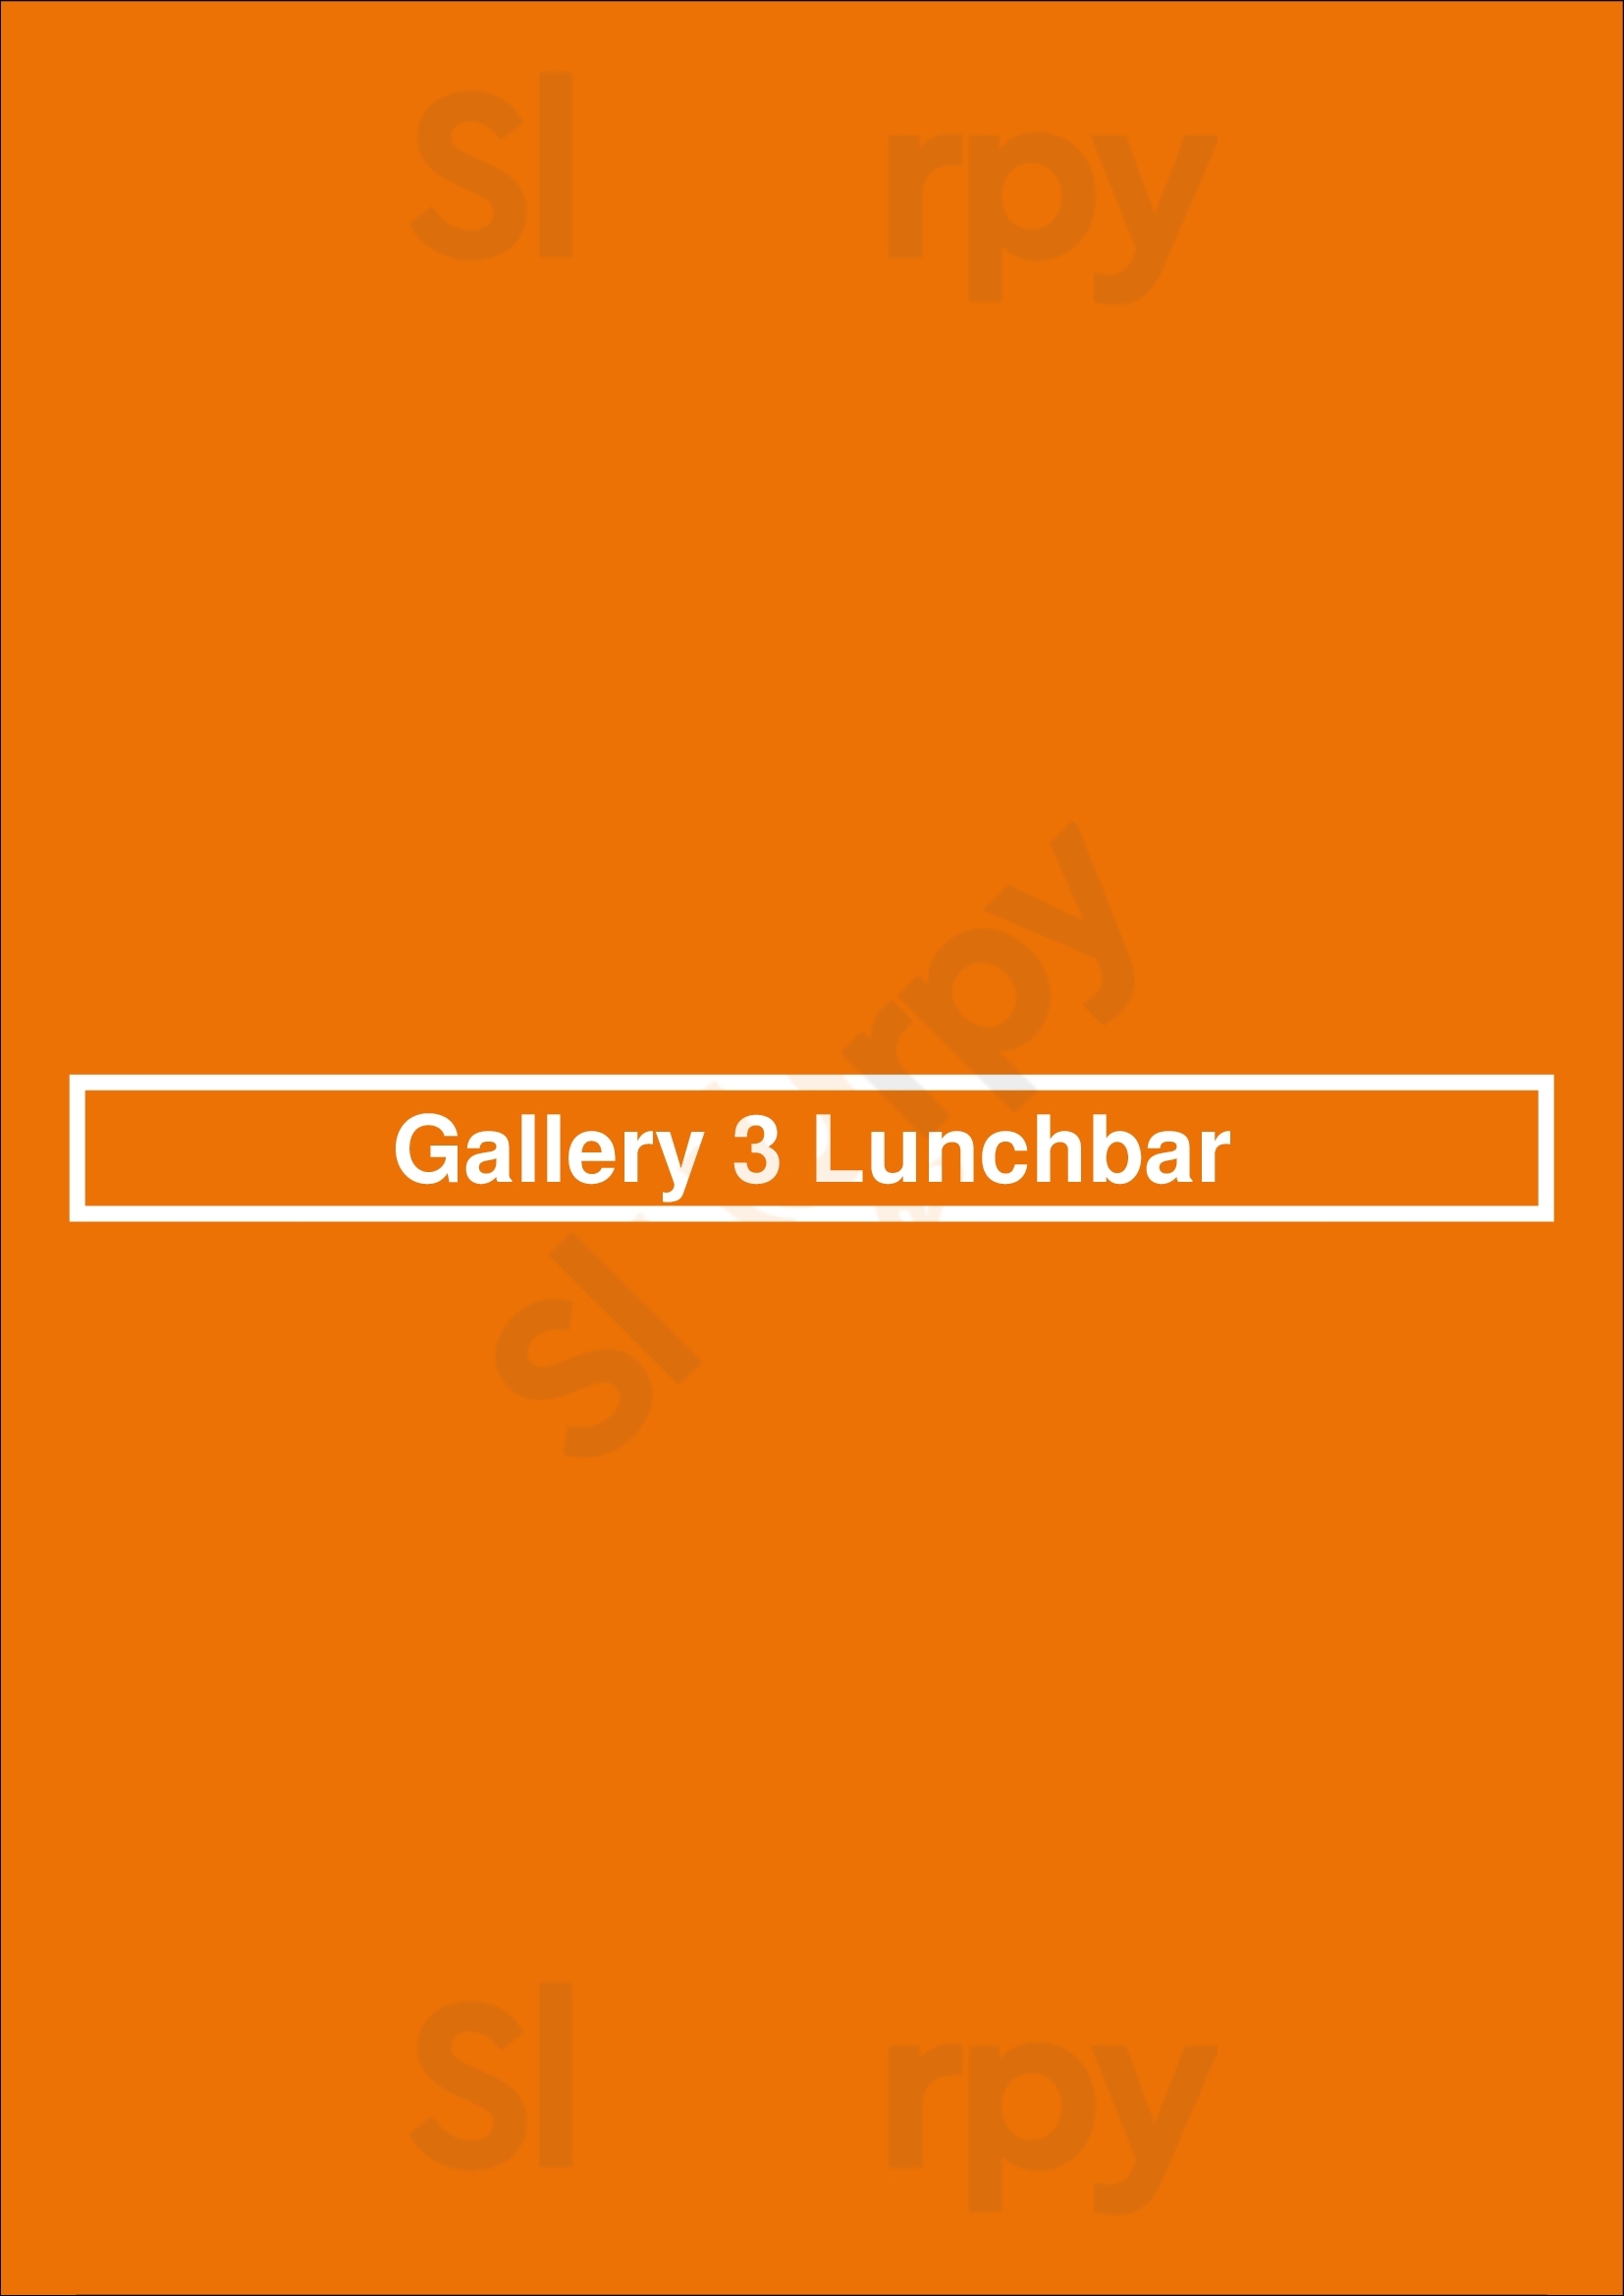 Gallery 3 Lunchbar Amsterdam Menu - 1